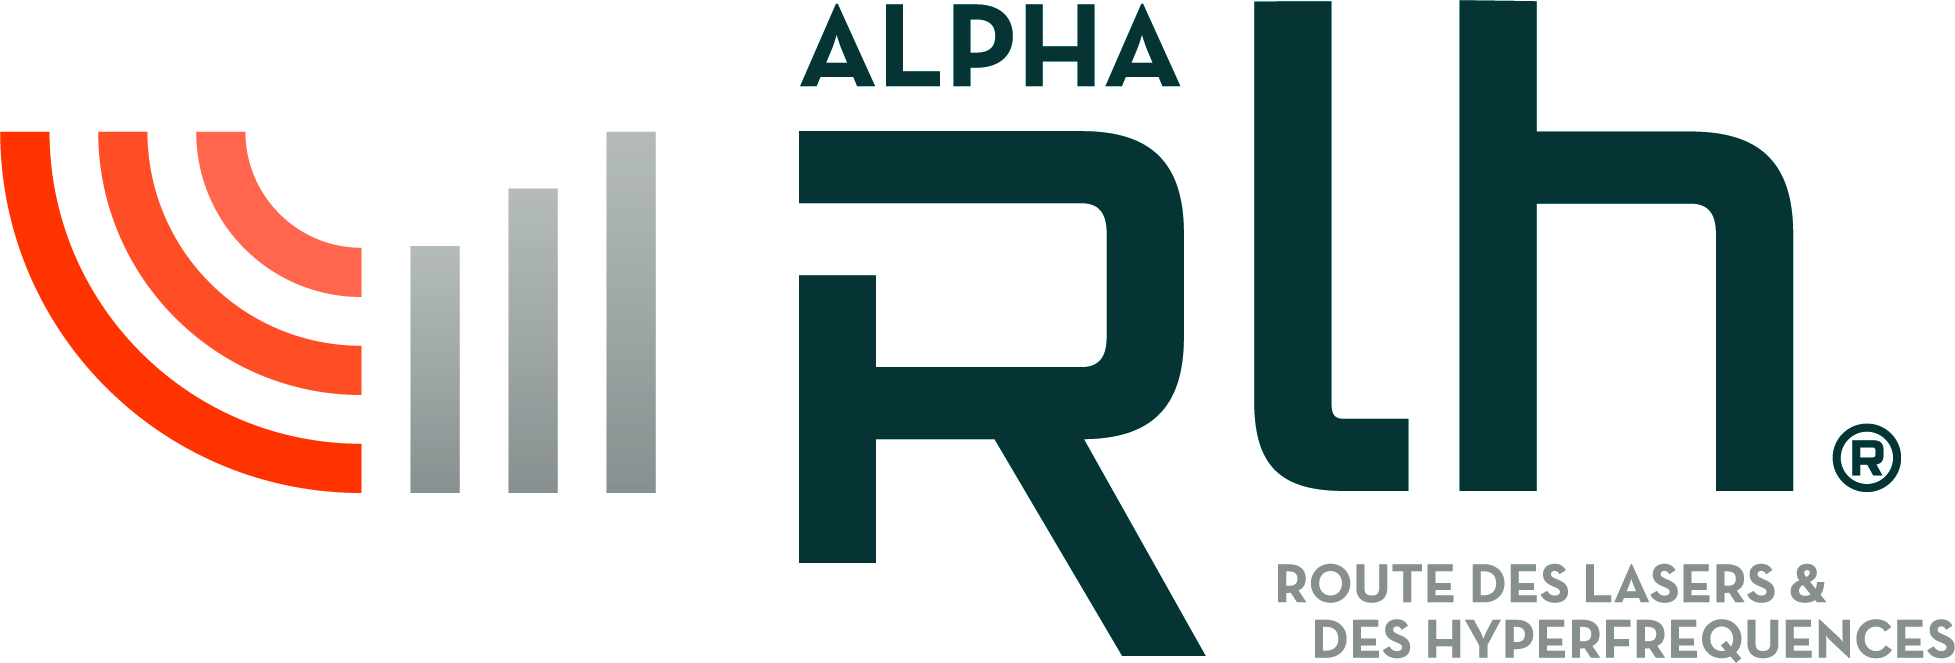 ALPHA - Route des Lasers &amp; des Hyperfréquences (ALPHA-RLH)